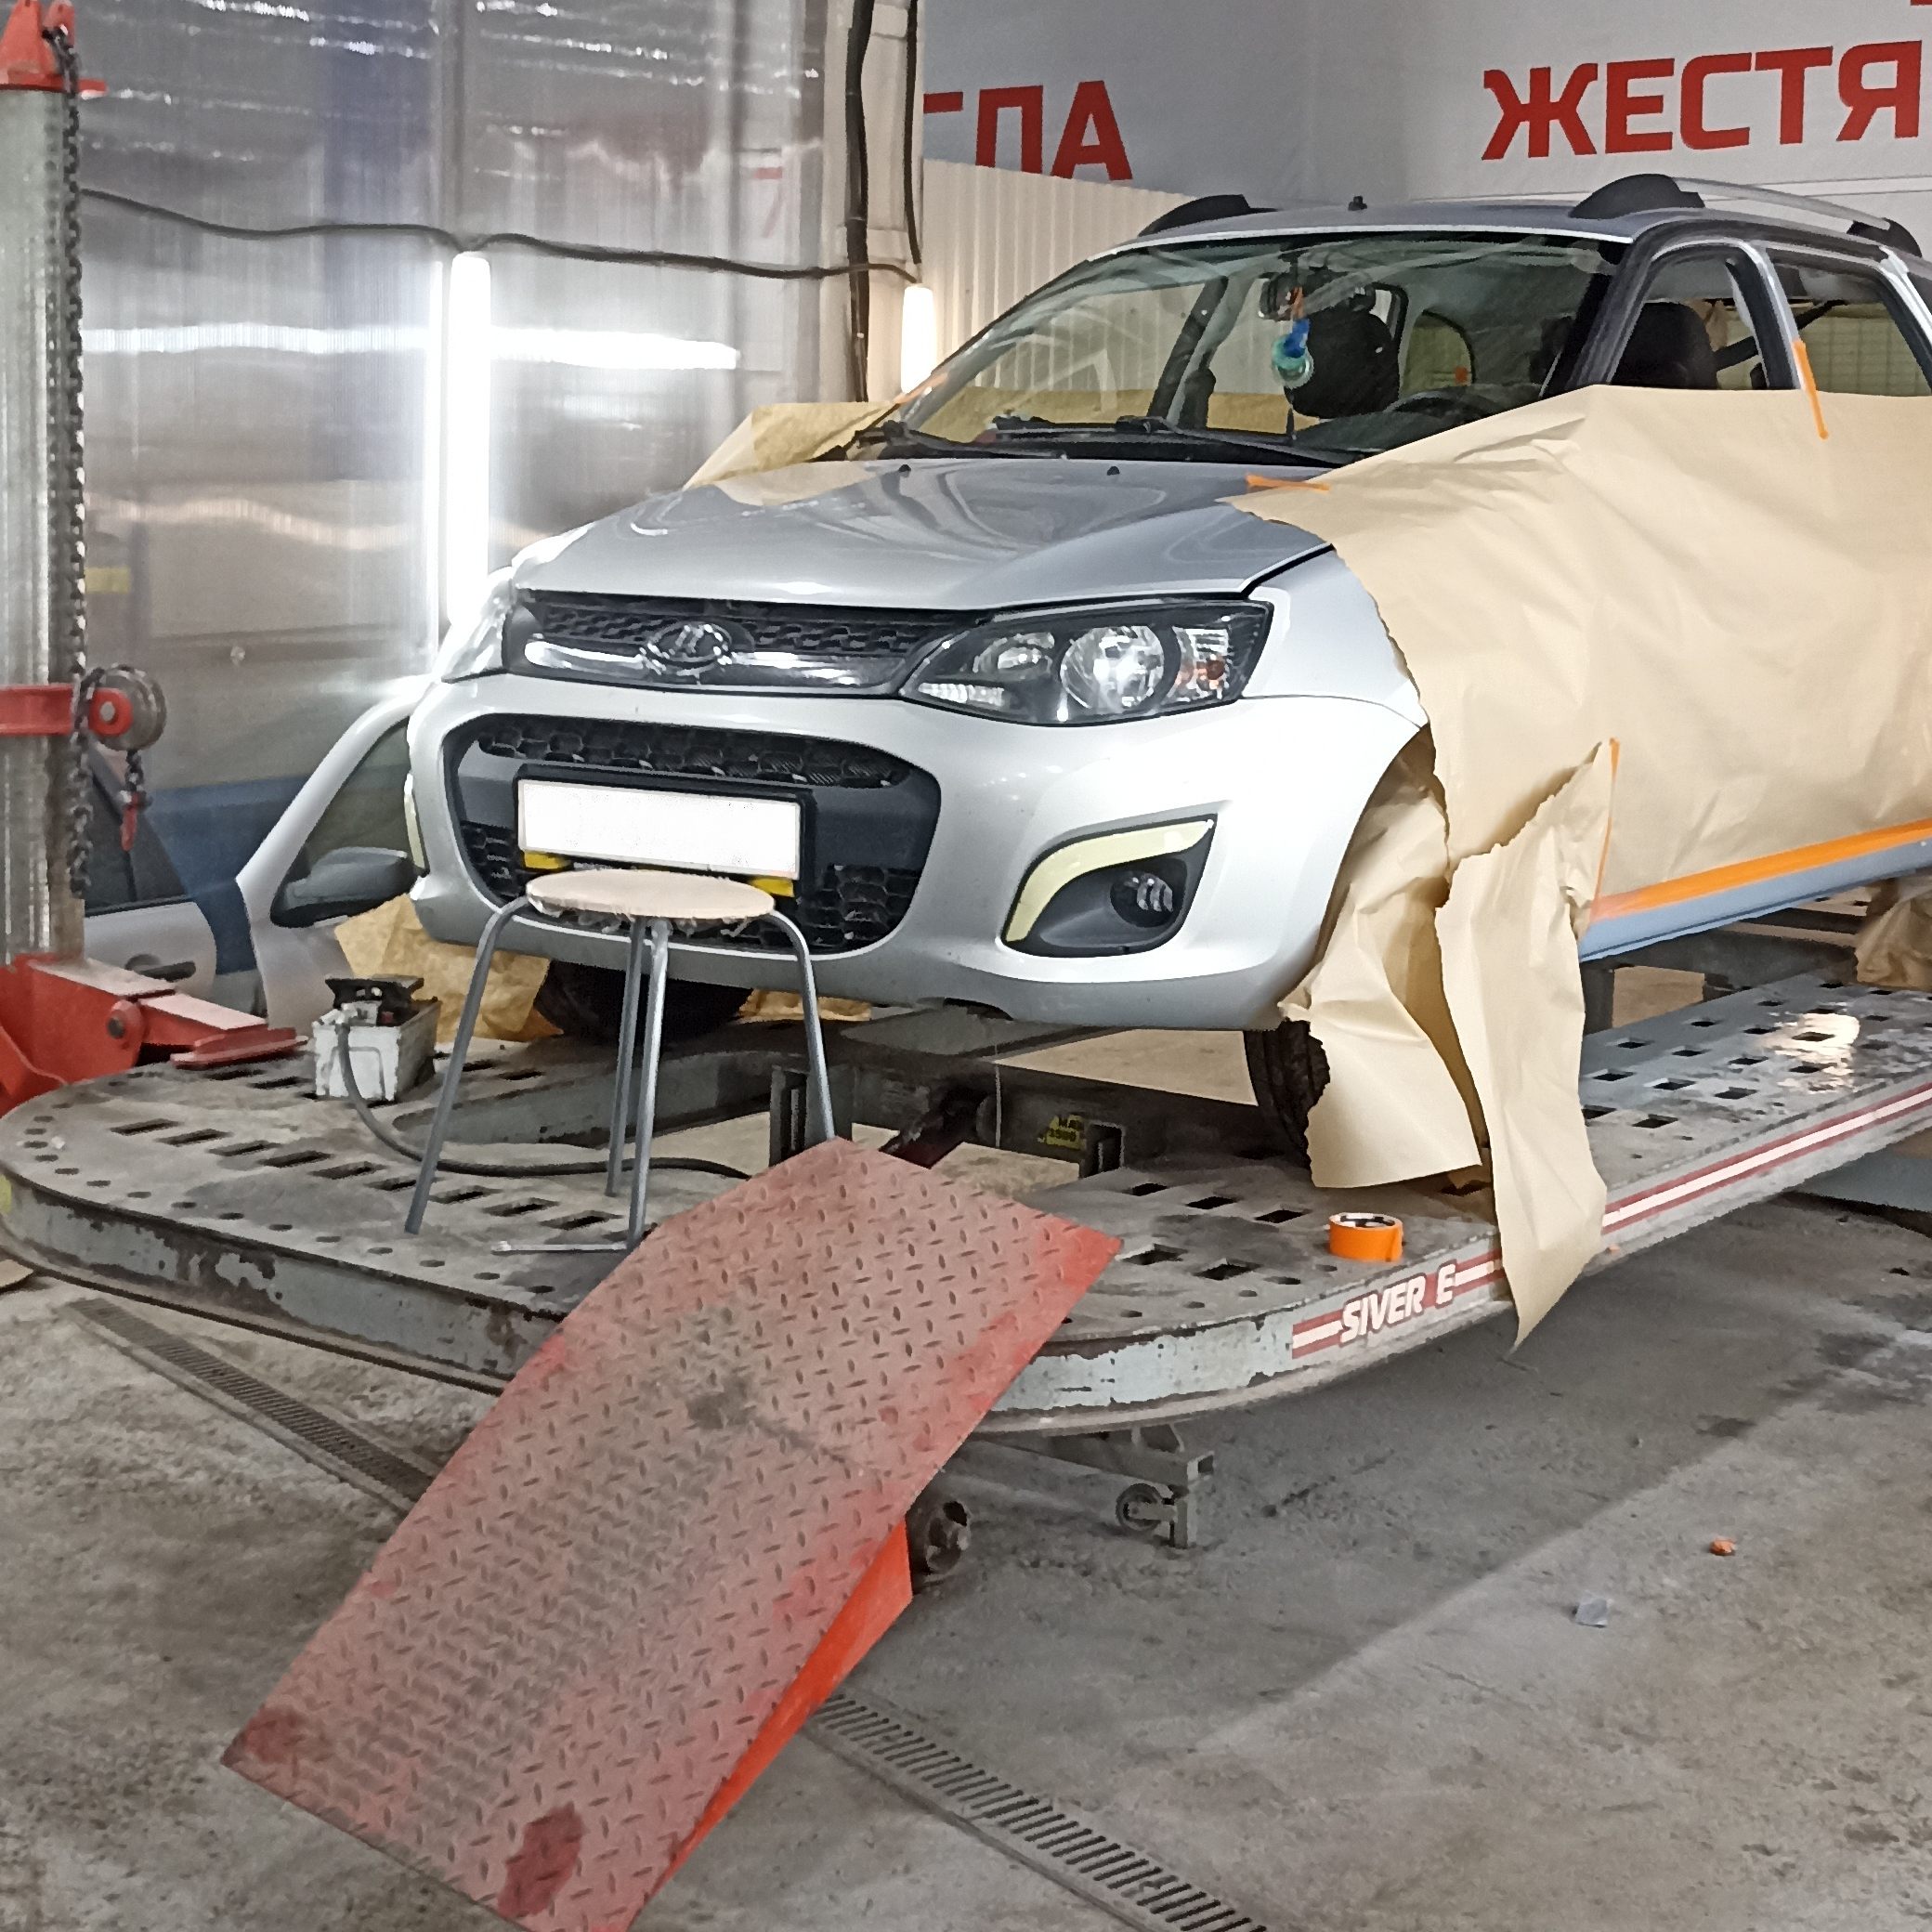 Кузовной ремонт, покраска автомобиля Город Уфа 002.png